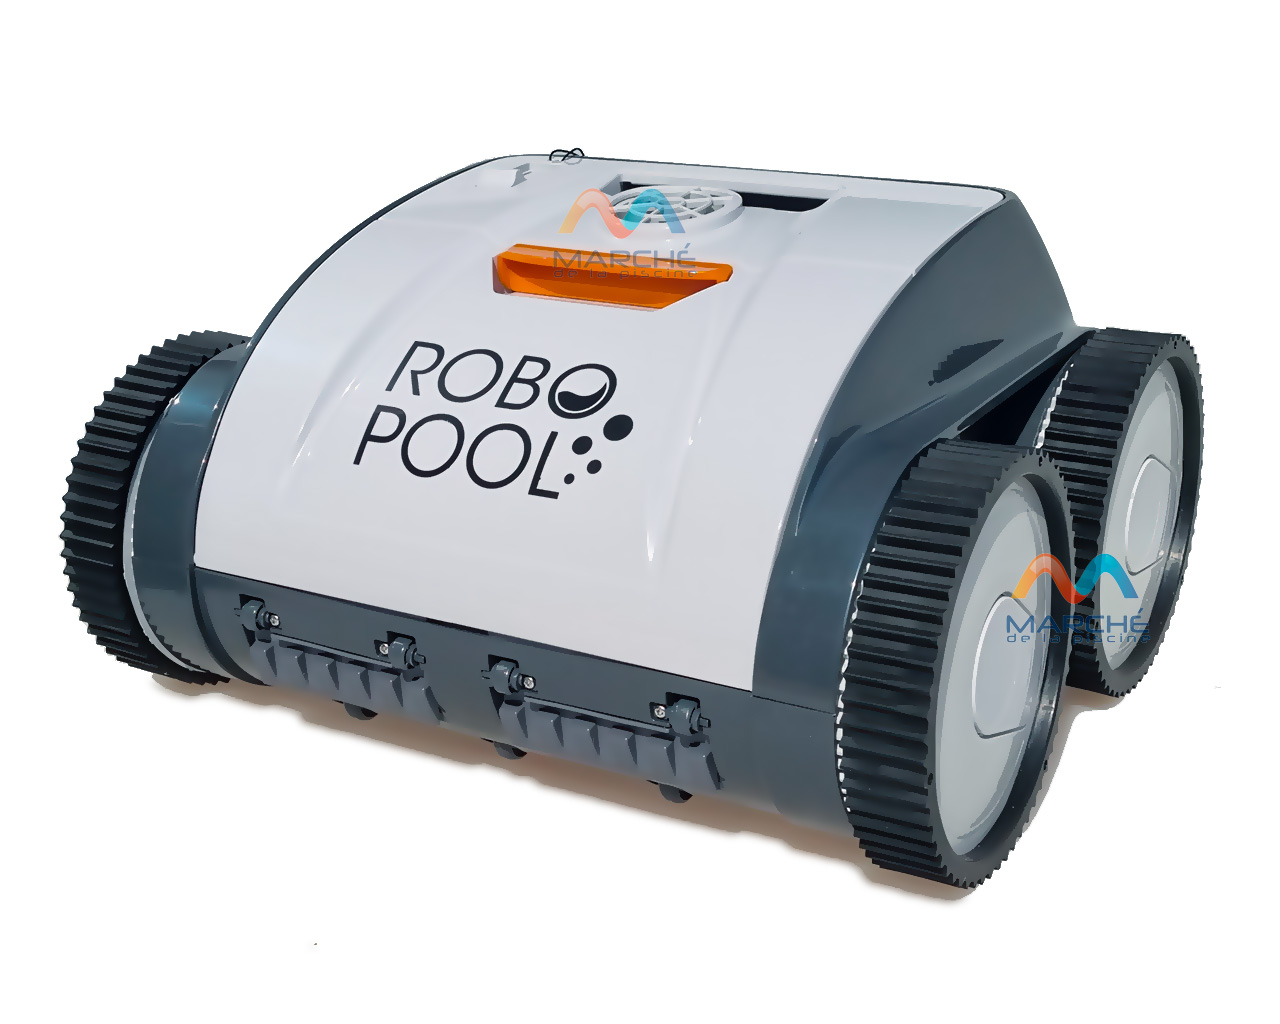 Robot de piscine sans fil autonome Robotclean Accu XL Ubbink